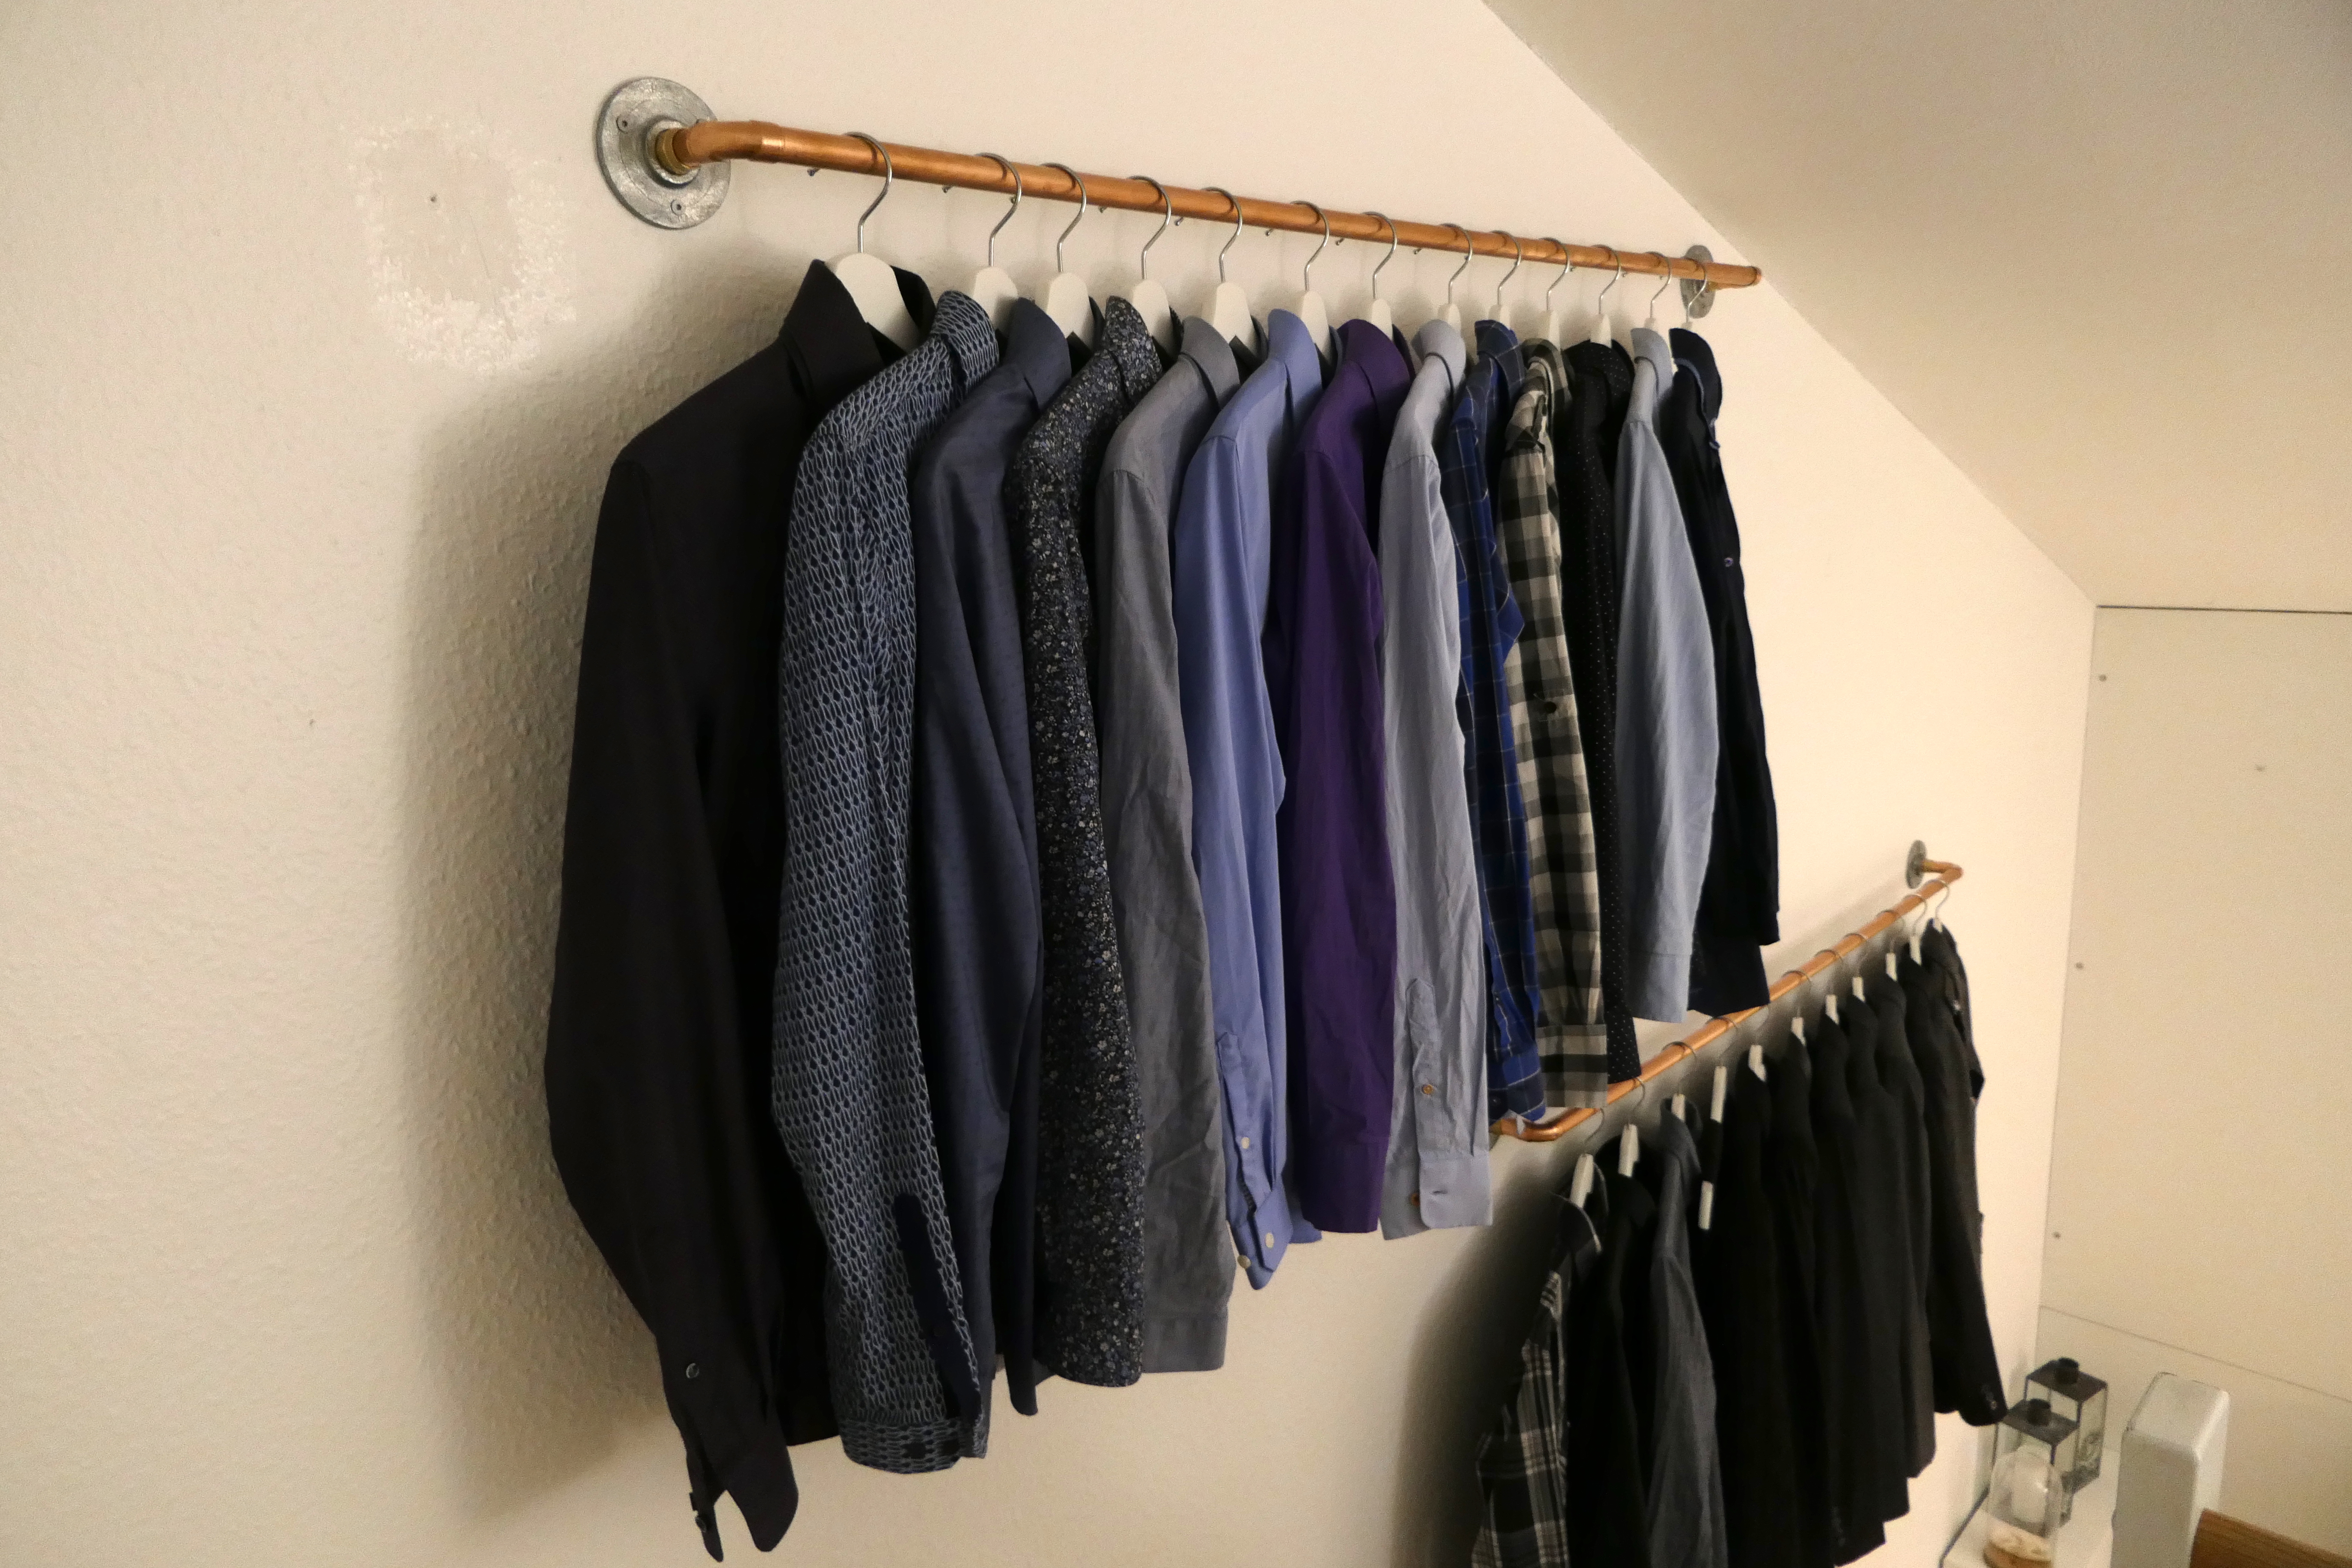 Space saving clothing rack